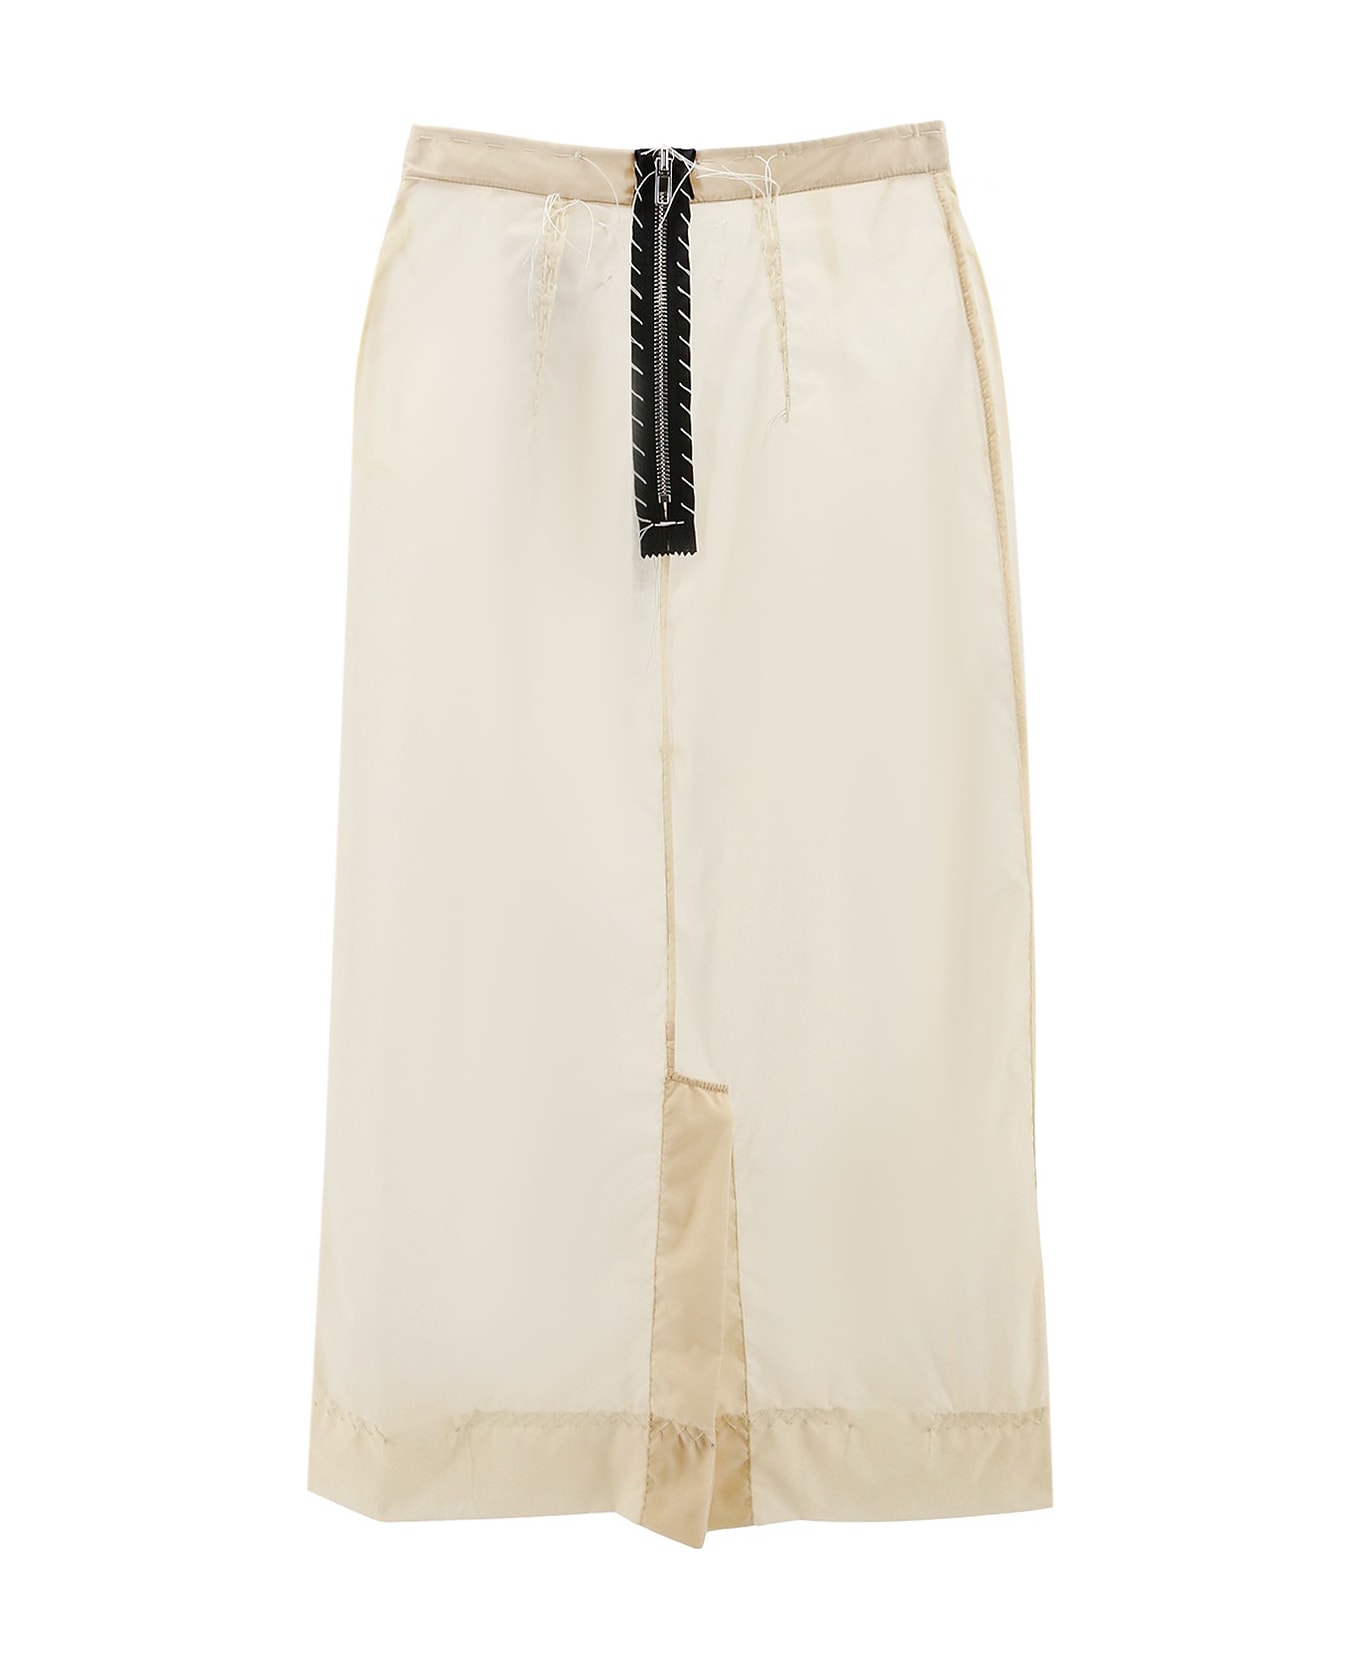 Maison Margiela Nylon Longuette Skirt - Beige